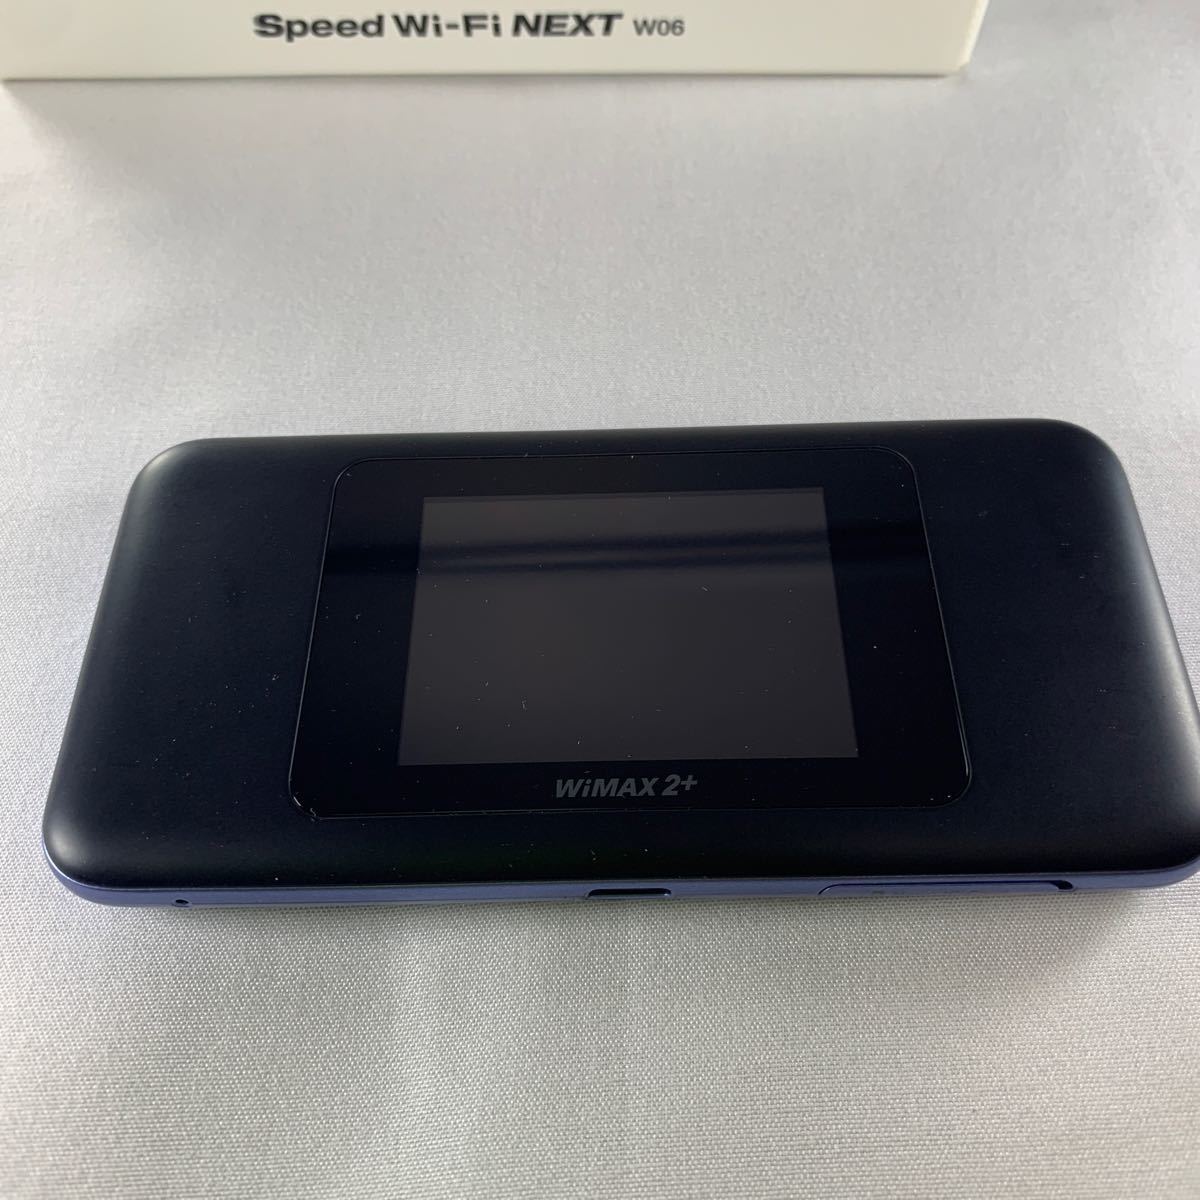 WiMAX2 Wi-Fi モバイルルーター W06